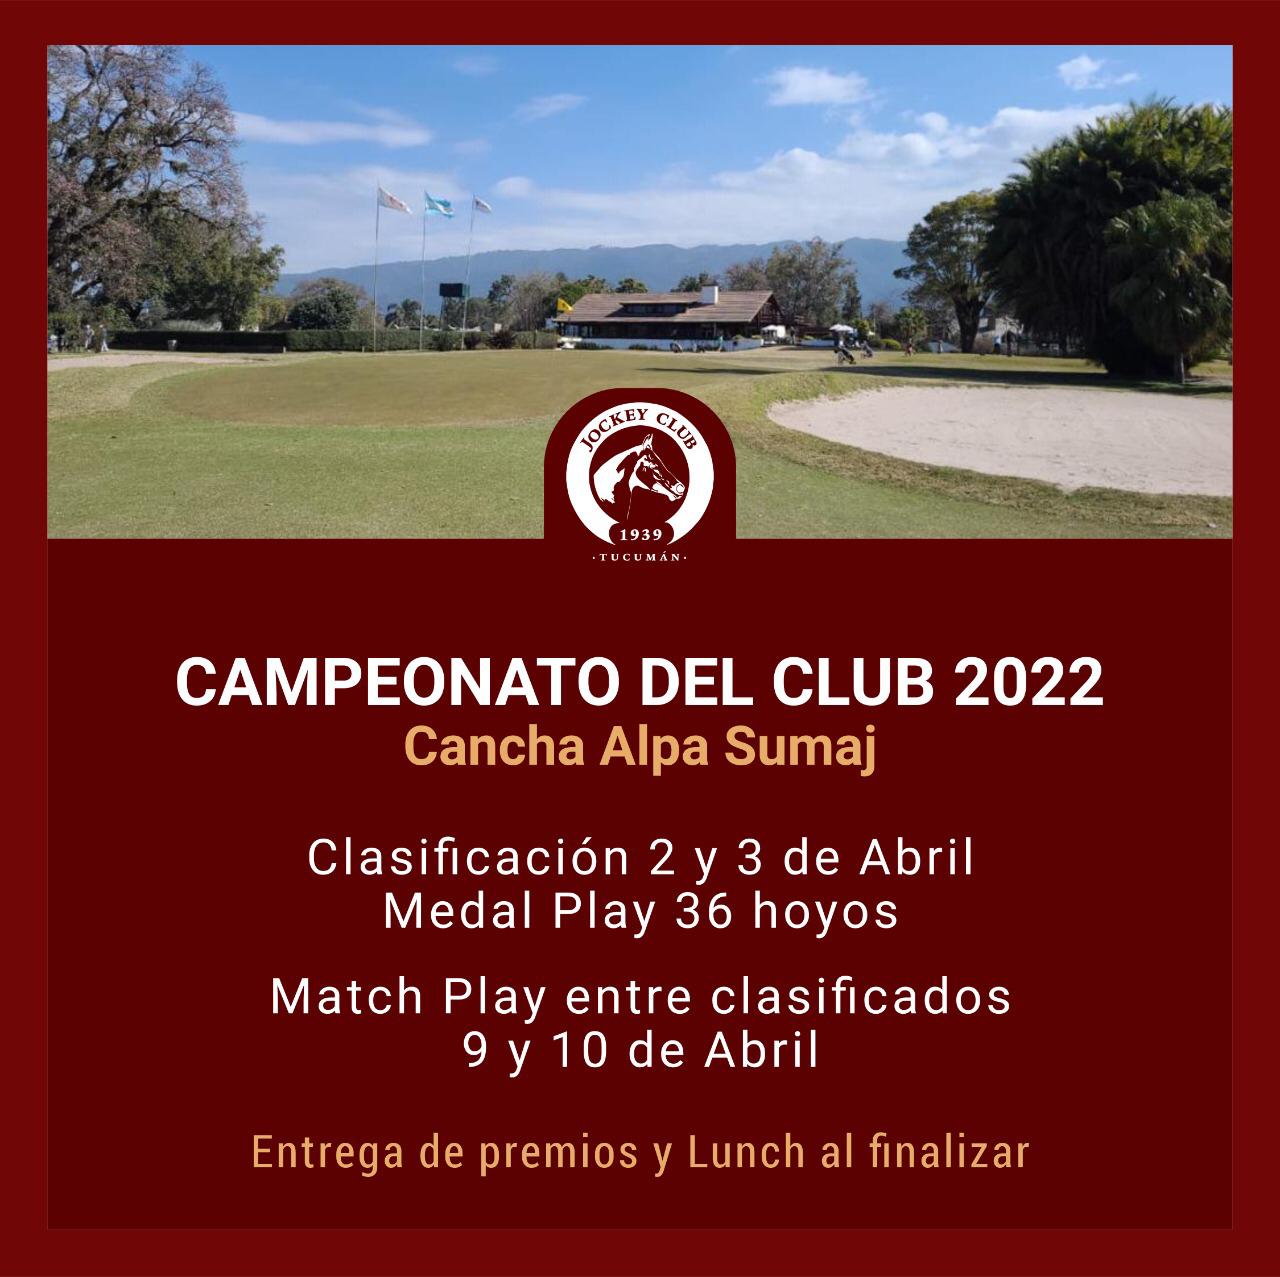 CLASIFICACION CAMPEONATO DEL CLUB 2022